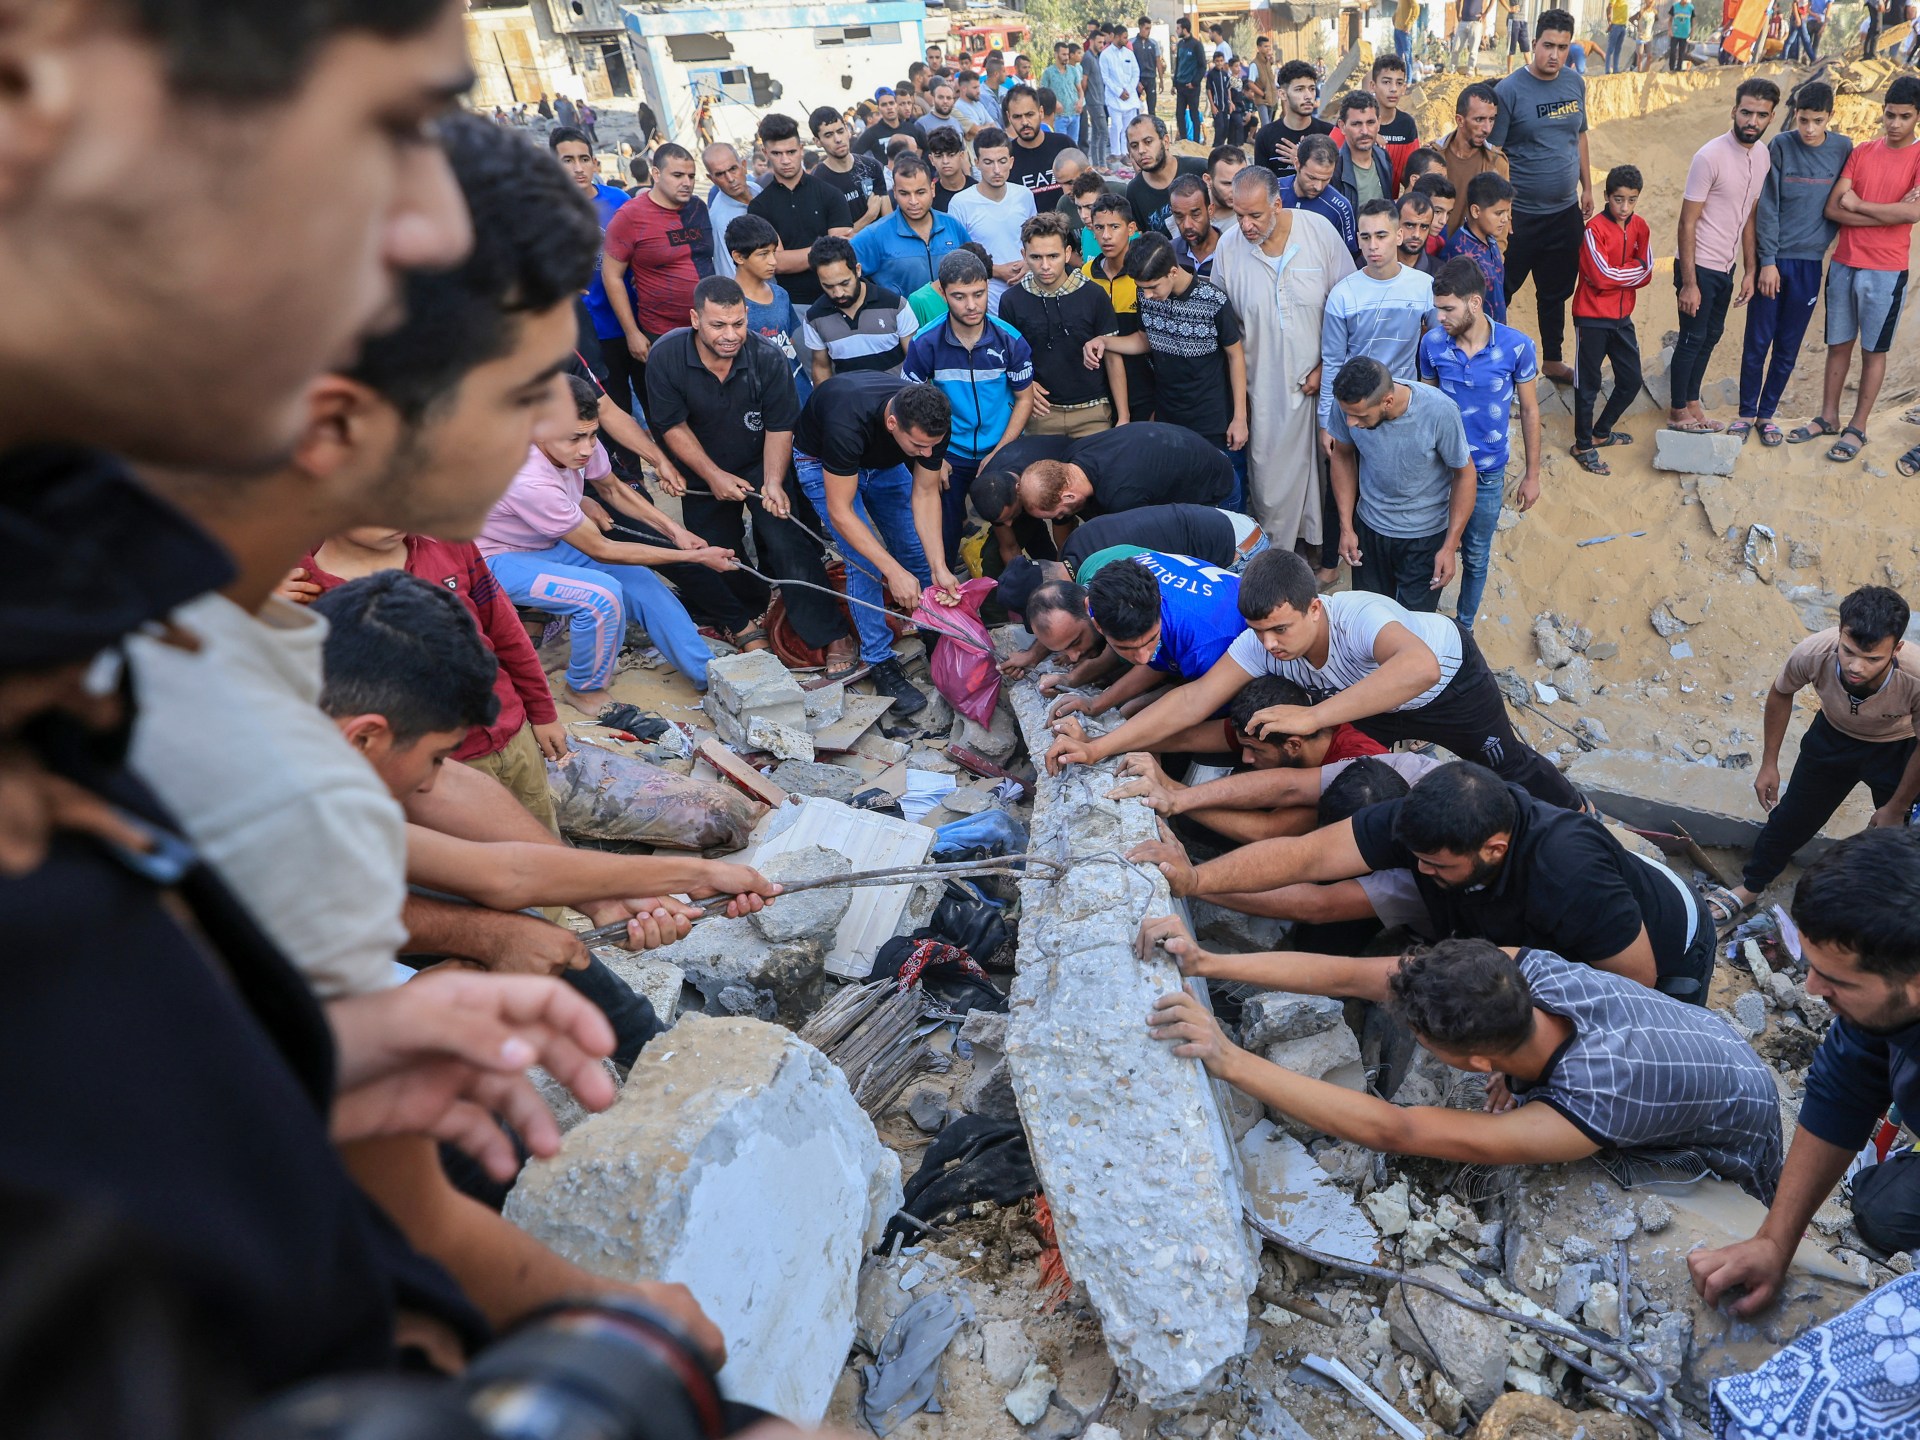 مرصد حقوقي يدعو لوقف تجويع المدنيين وقتلهم في غزة | أخبار حريات – البوكس نيوز